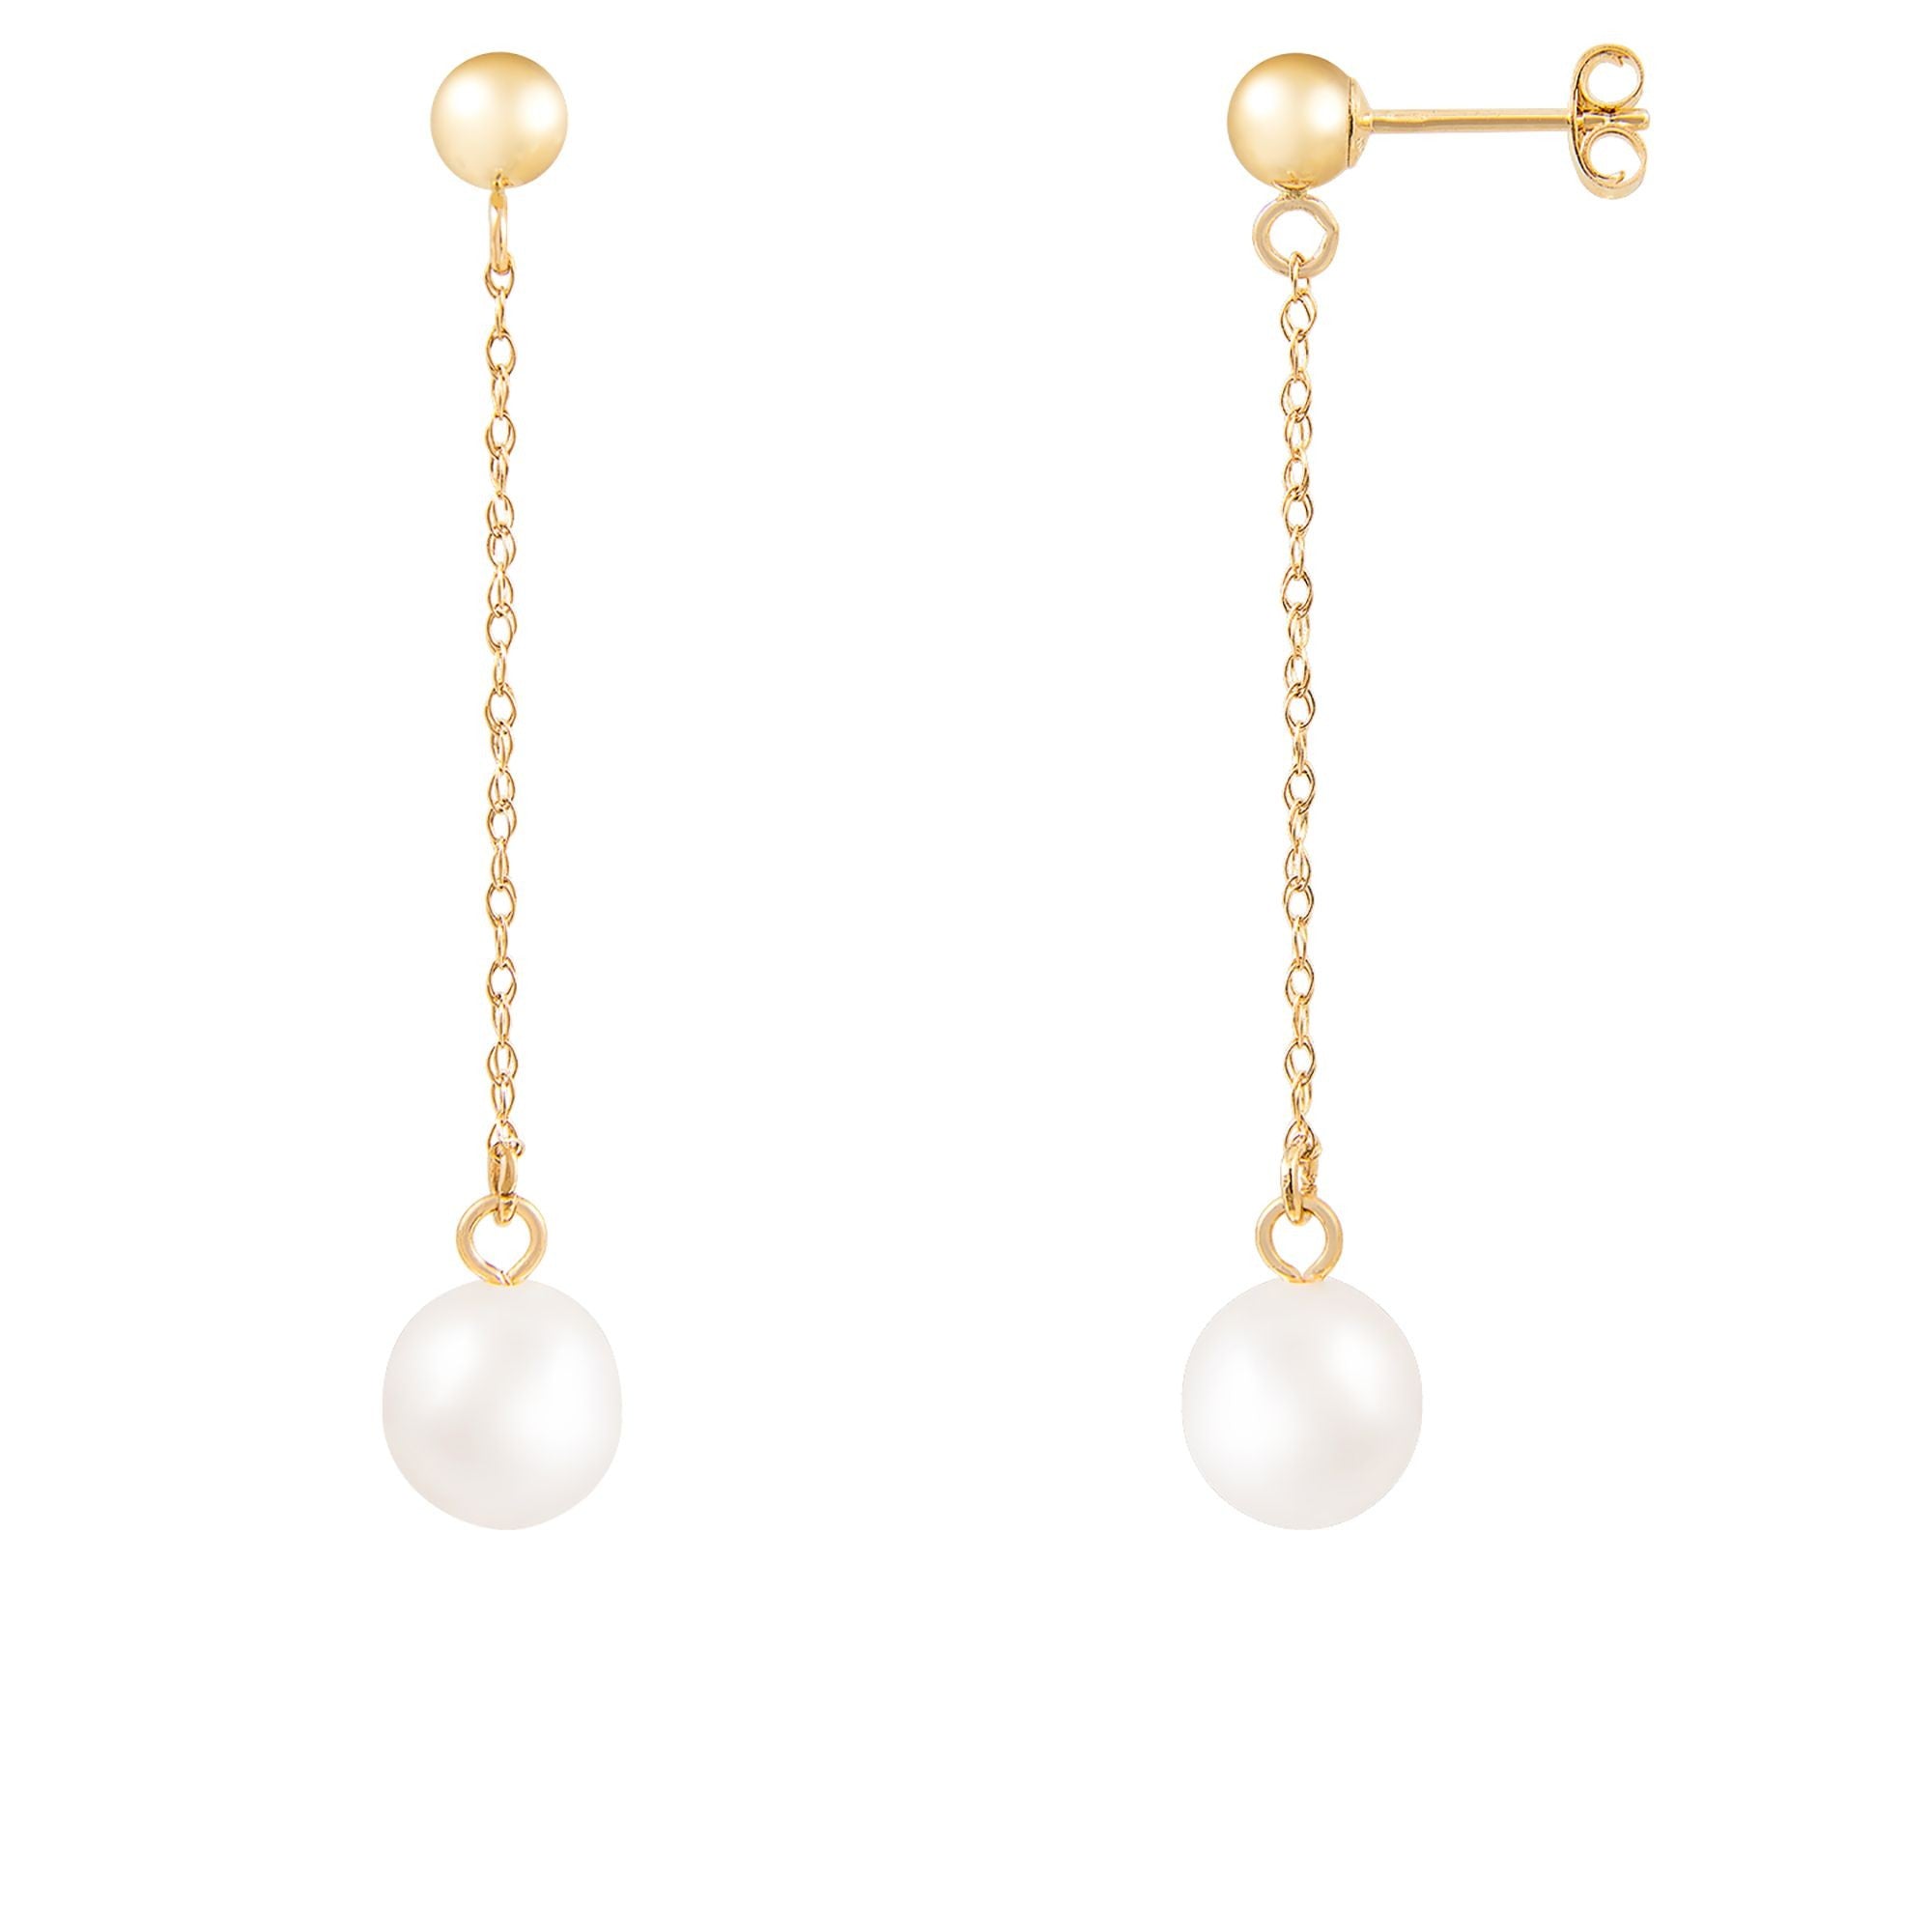 title:Splendid Pearls 14K Yellow Gold Diamond Earrings HOF-45WY;color:White